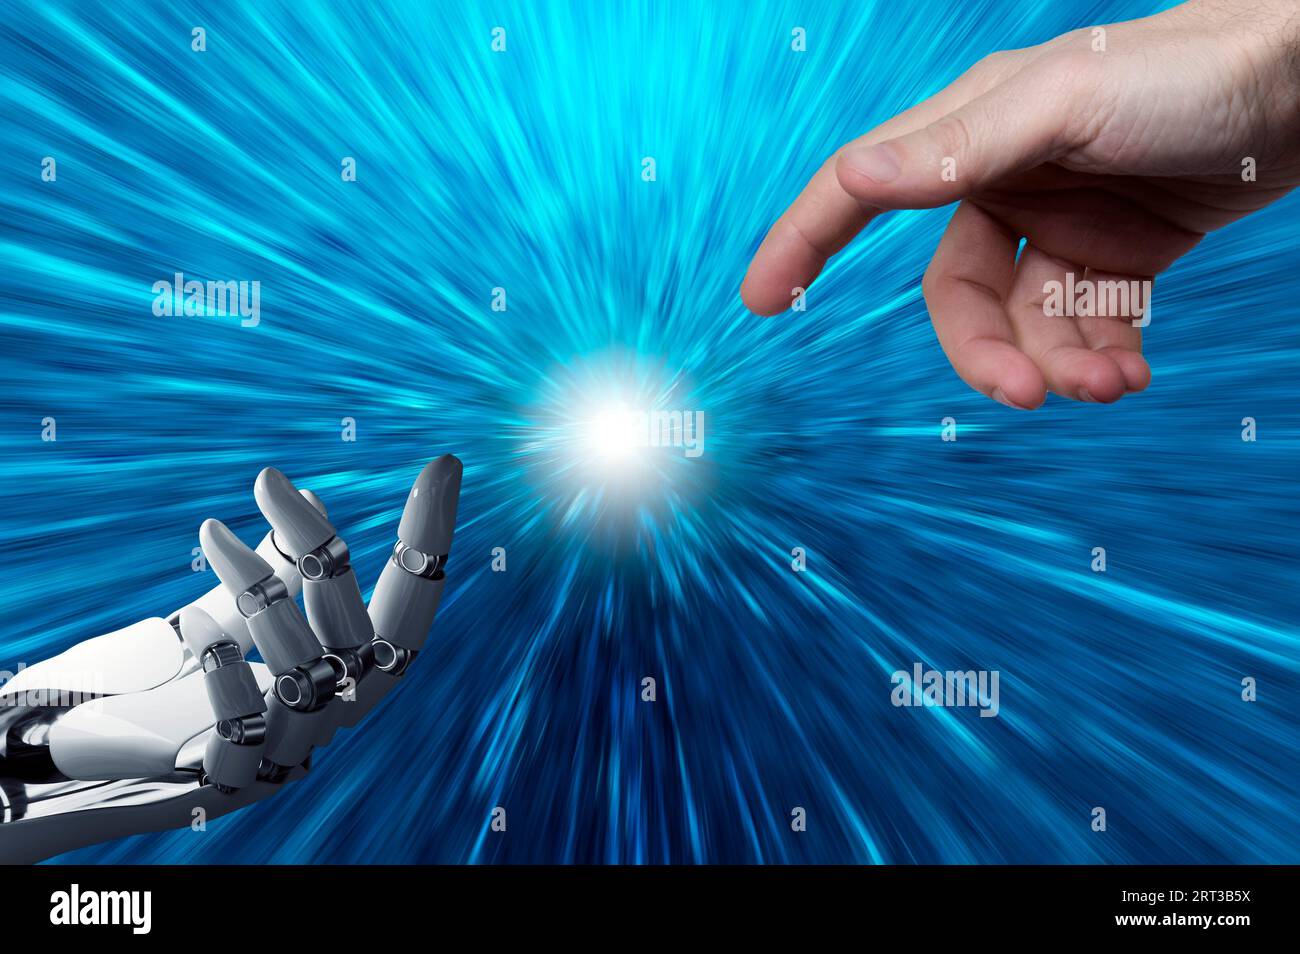 Menschliche Hand berührt eine Roboterhand Stockfoto